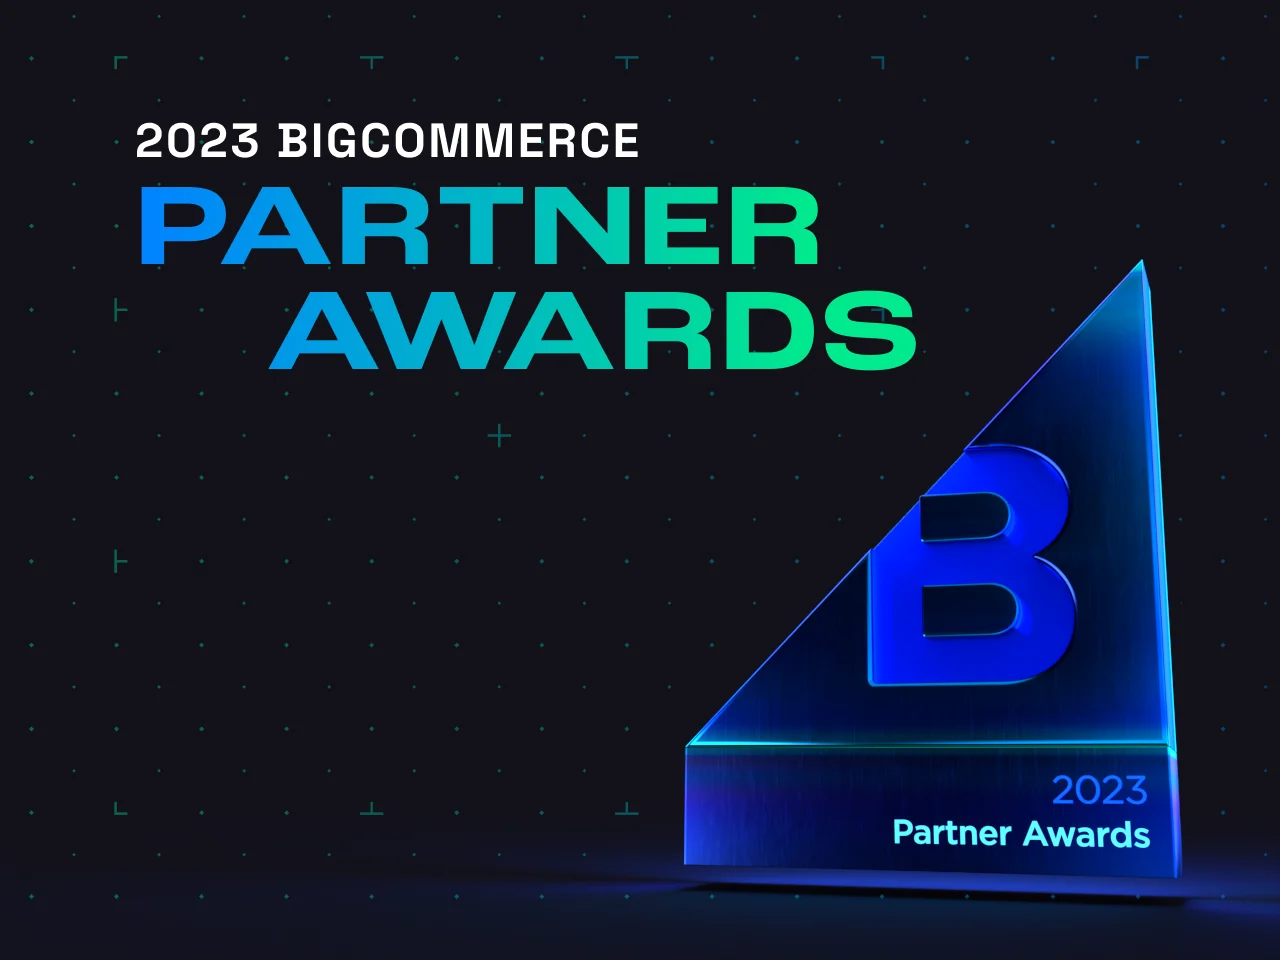 2023 Partner Awards Image Asset